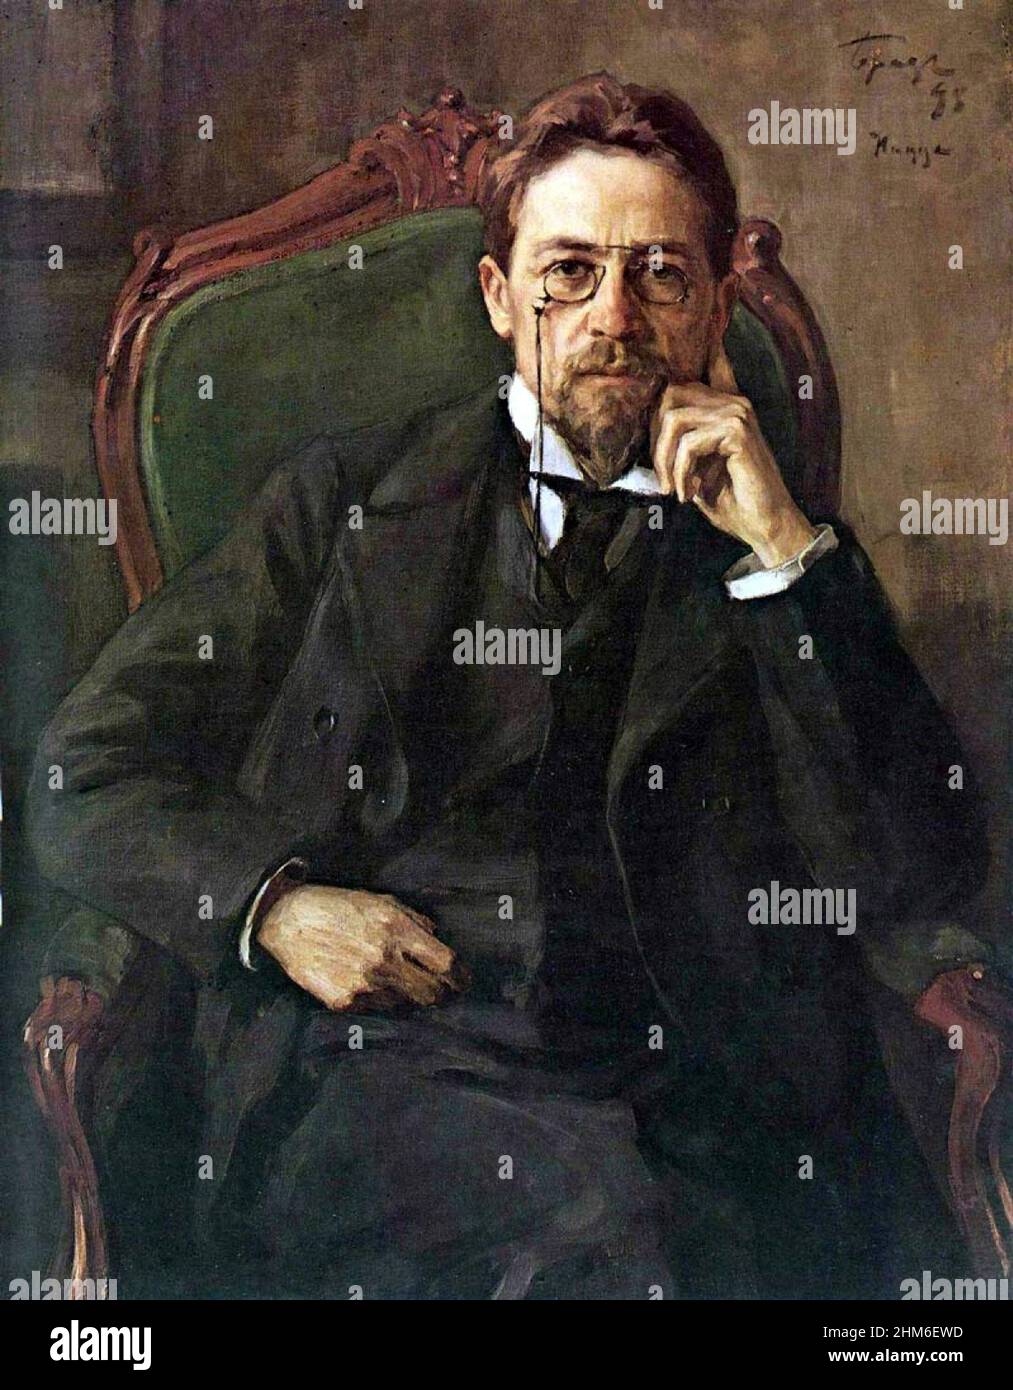 L'autore russo Anton Chekhov nel 1898, di 38 anni. Pittura di Osip Braz Foto Stock